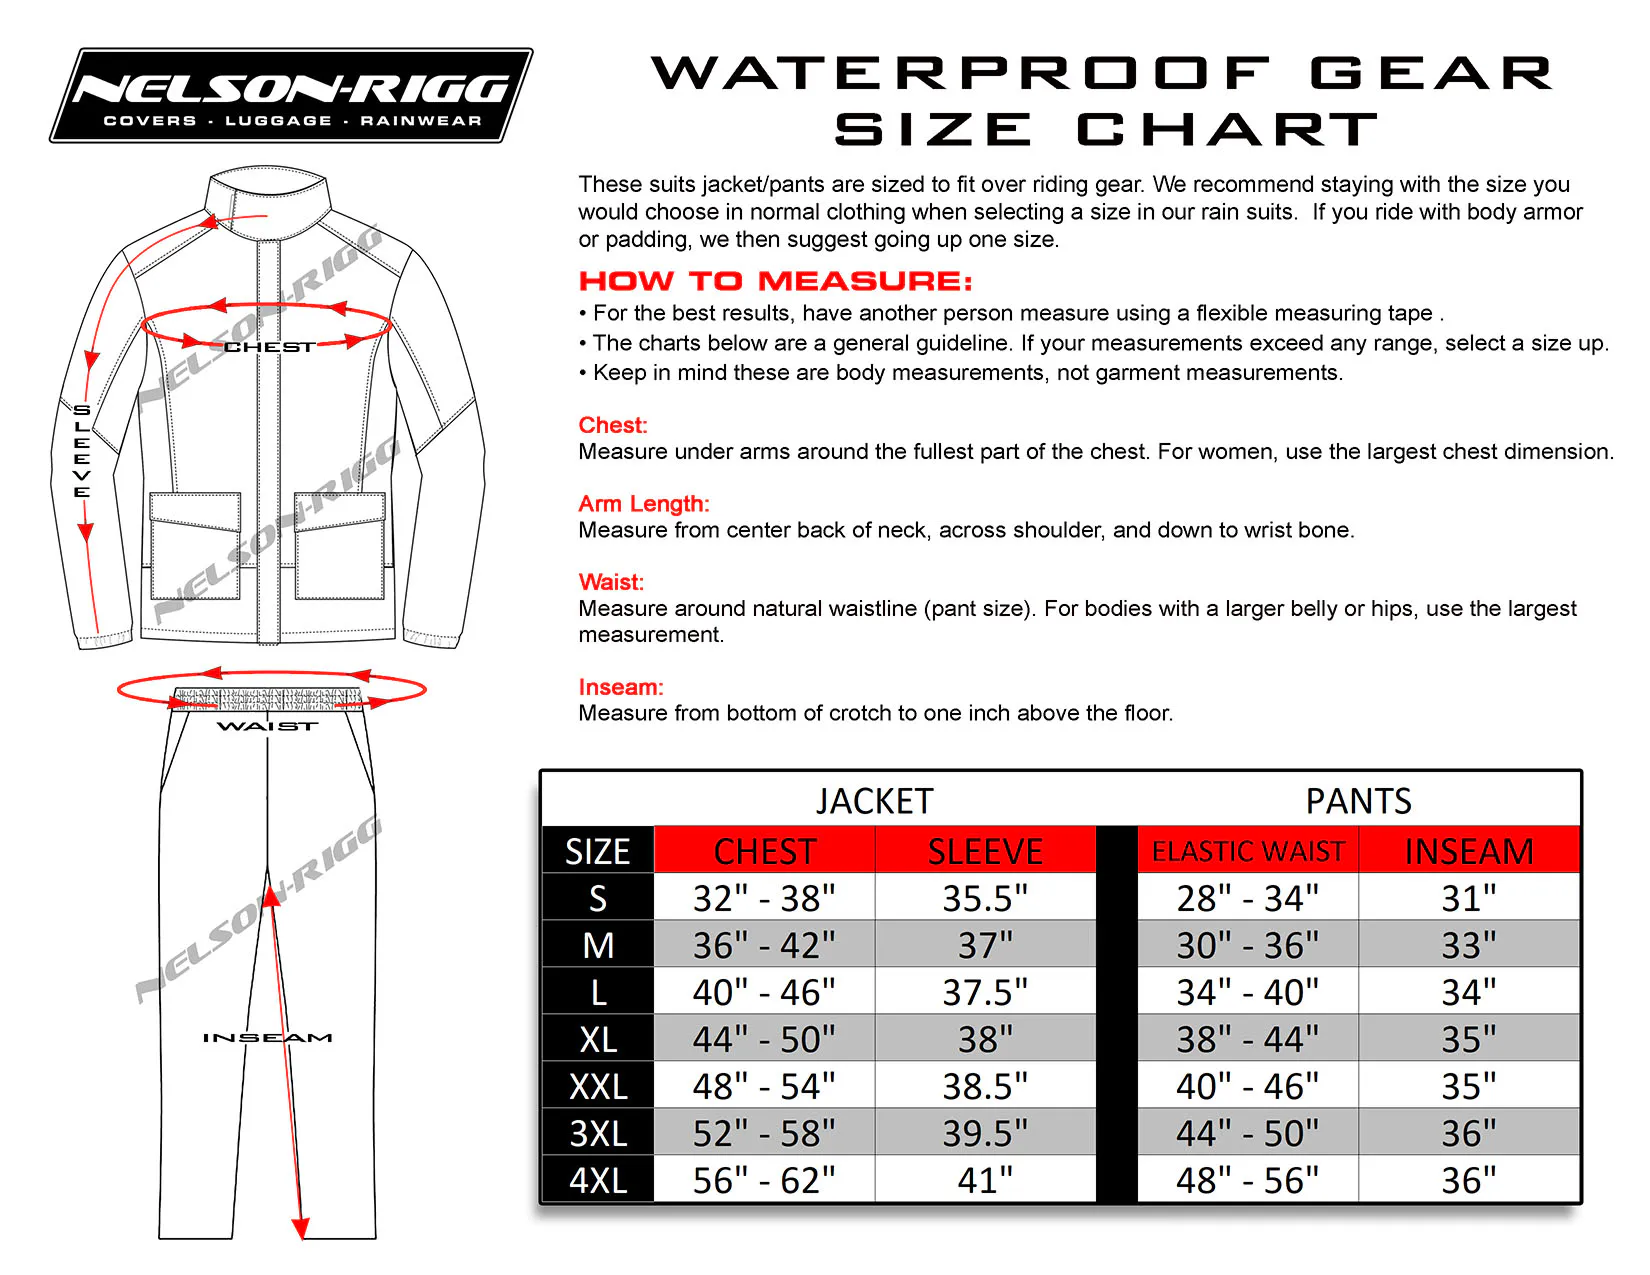 Guía de talla traje de lluevia de 2 piezas Nelson Rigg